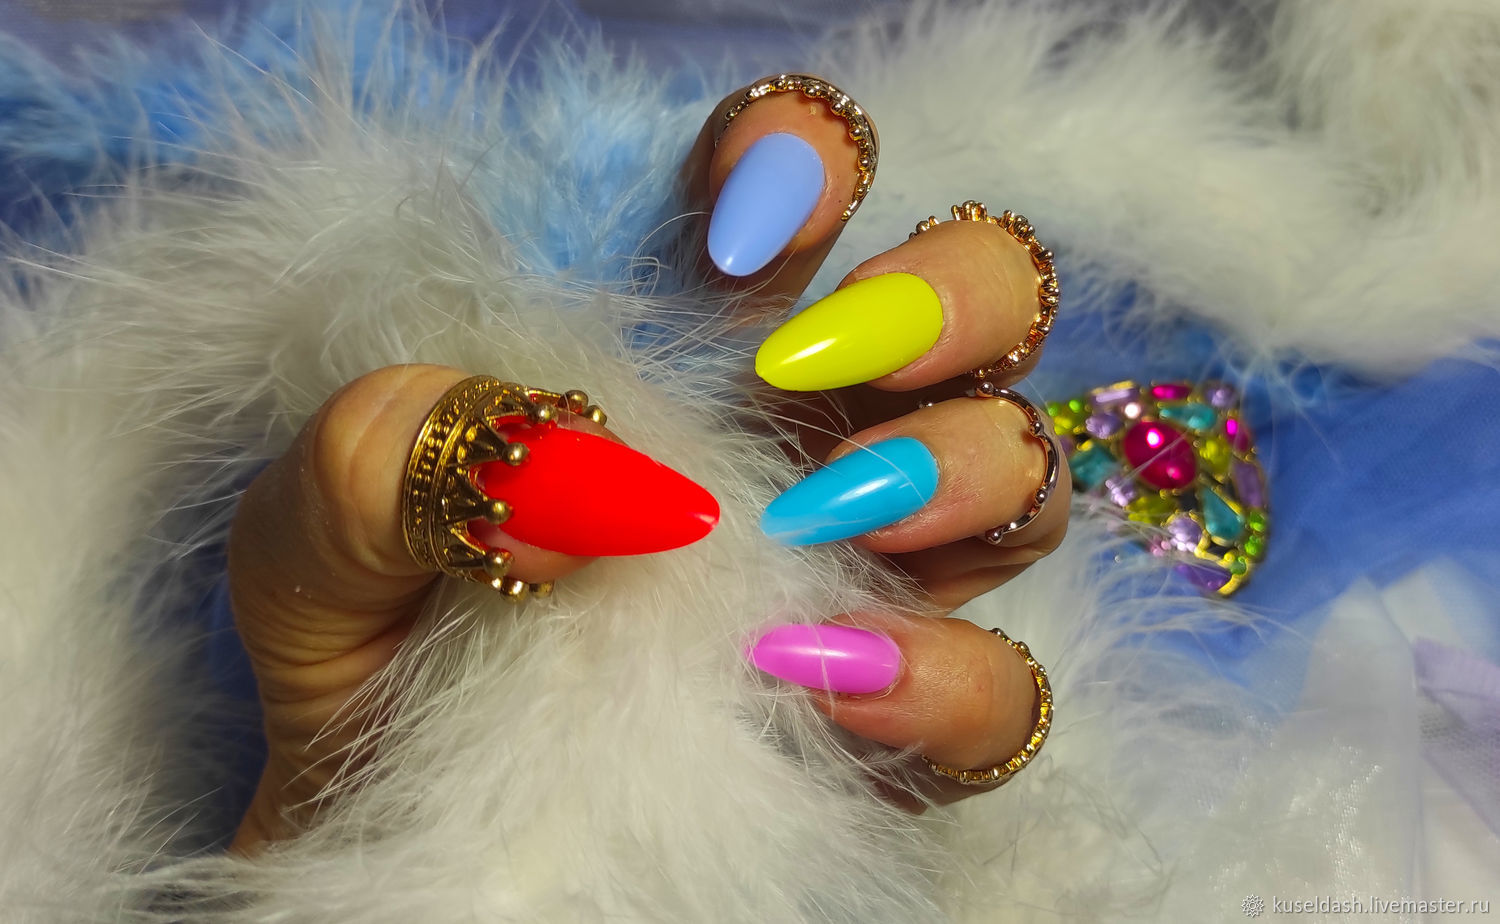 Кисти и аксессуары для дизайна ногтей купить в Киеве, цена, отзывы — интернет-магазин Naomi